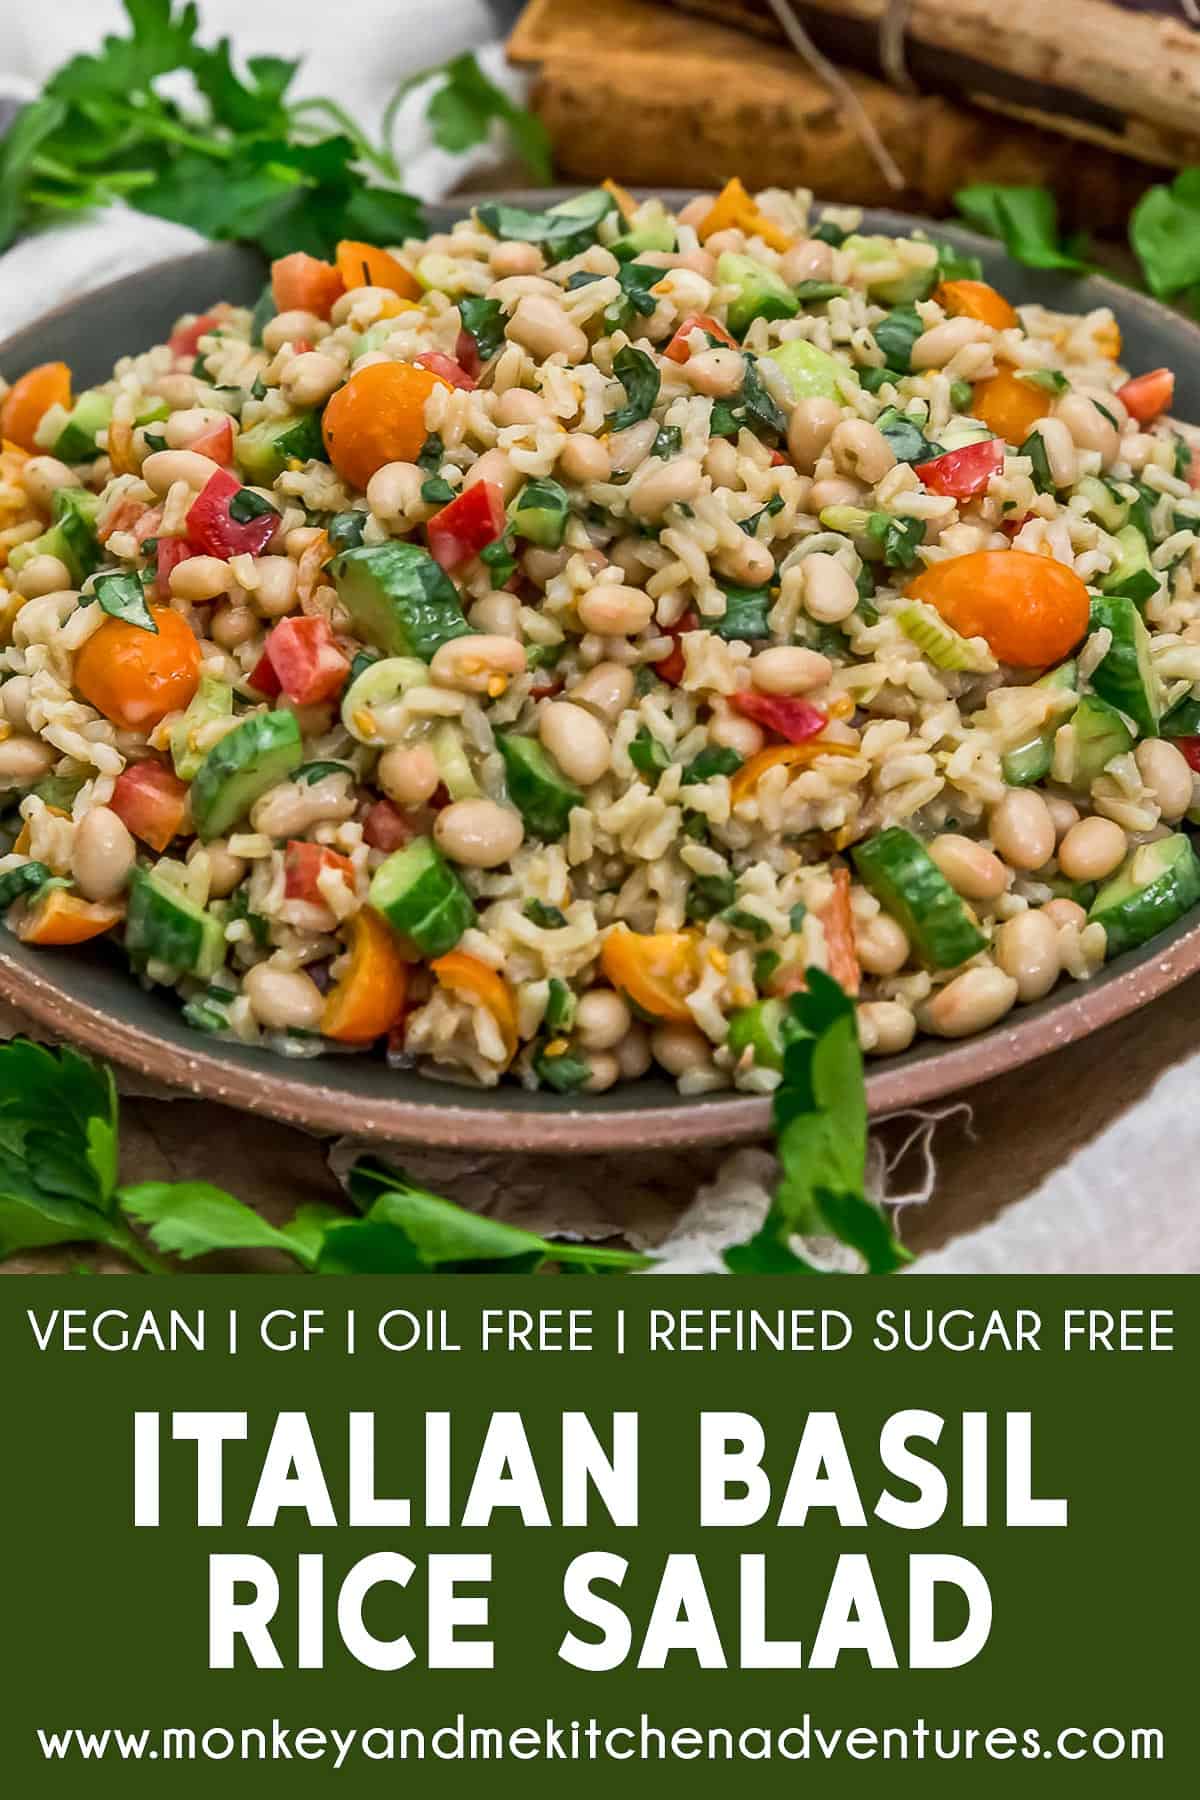 Italian Basil Rice Salad with text description